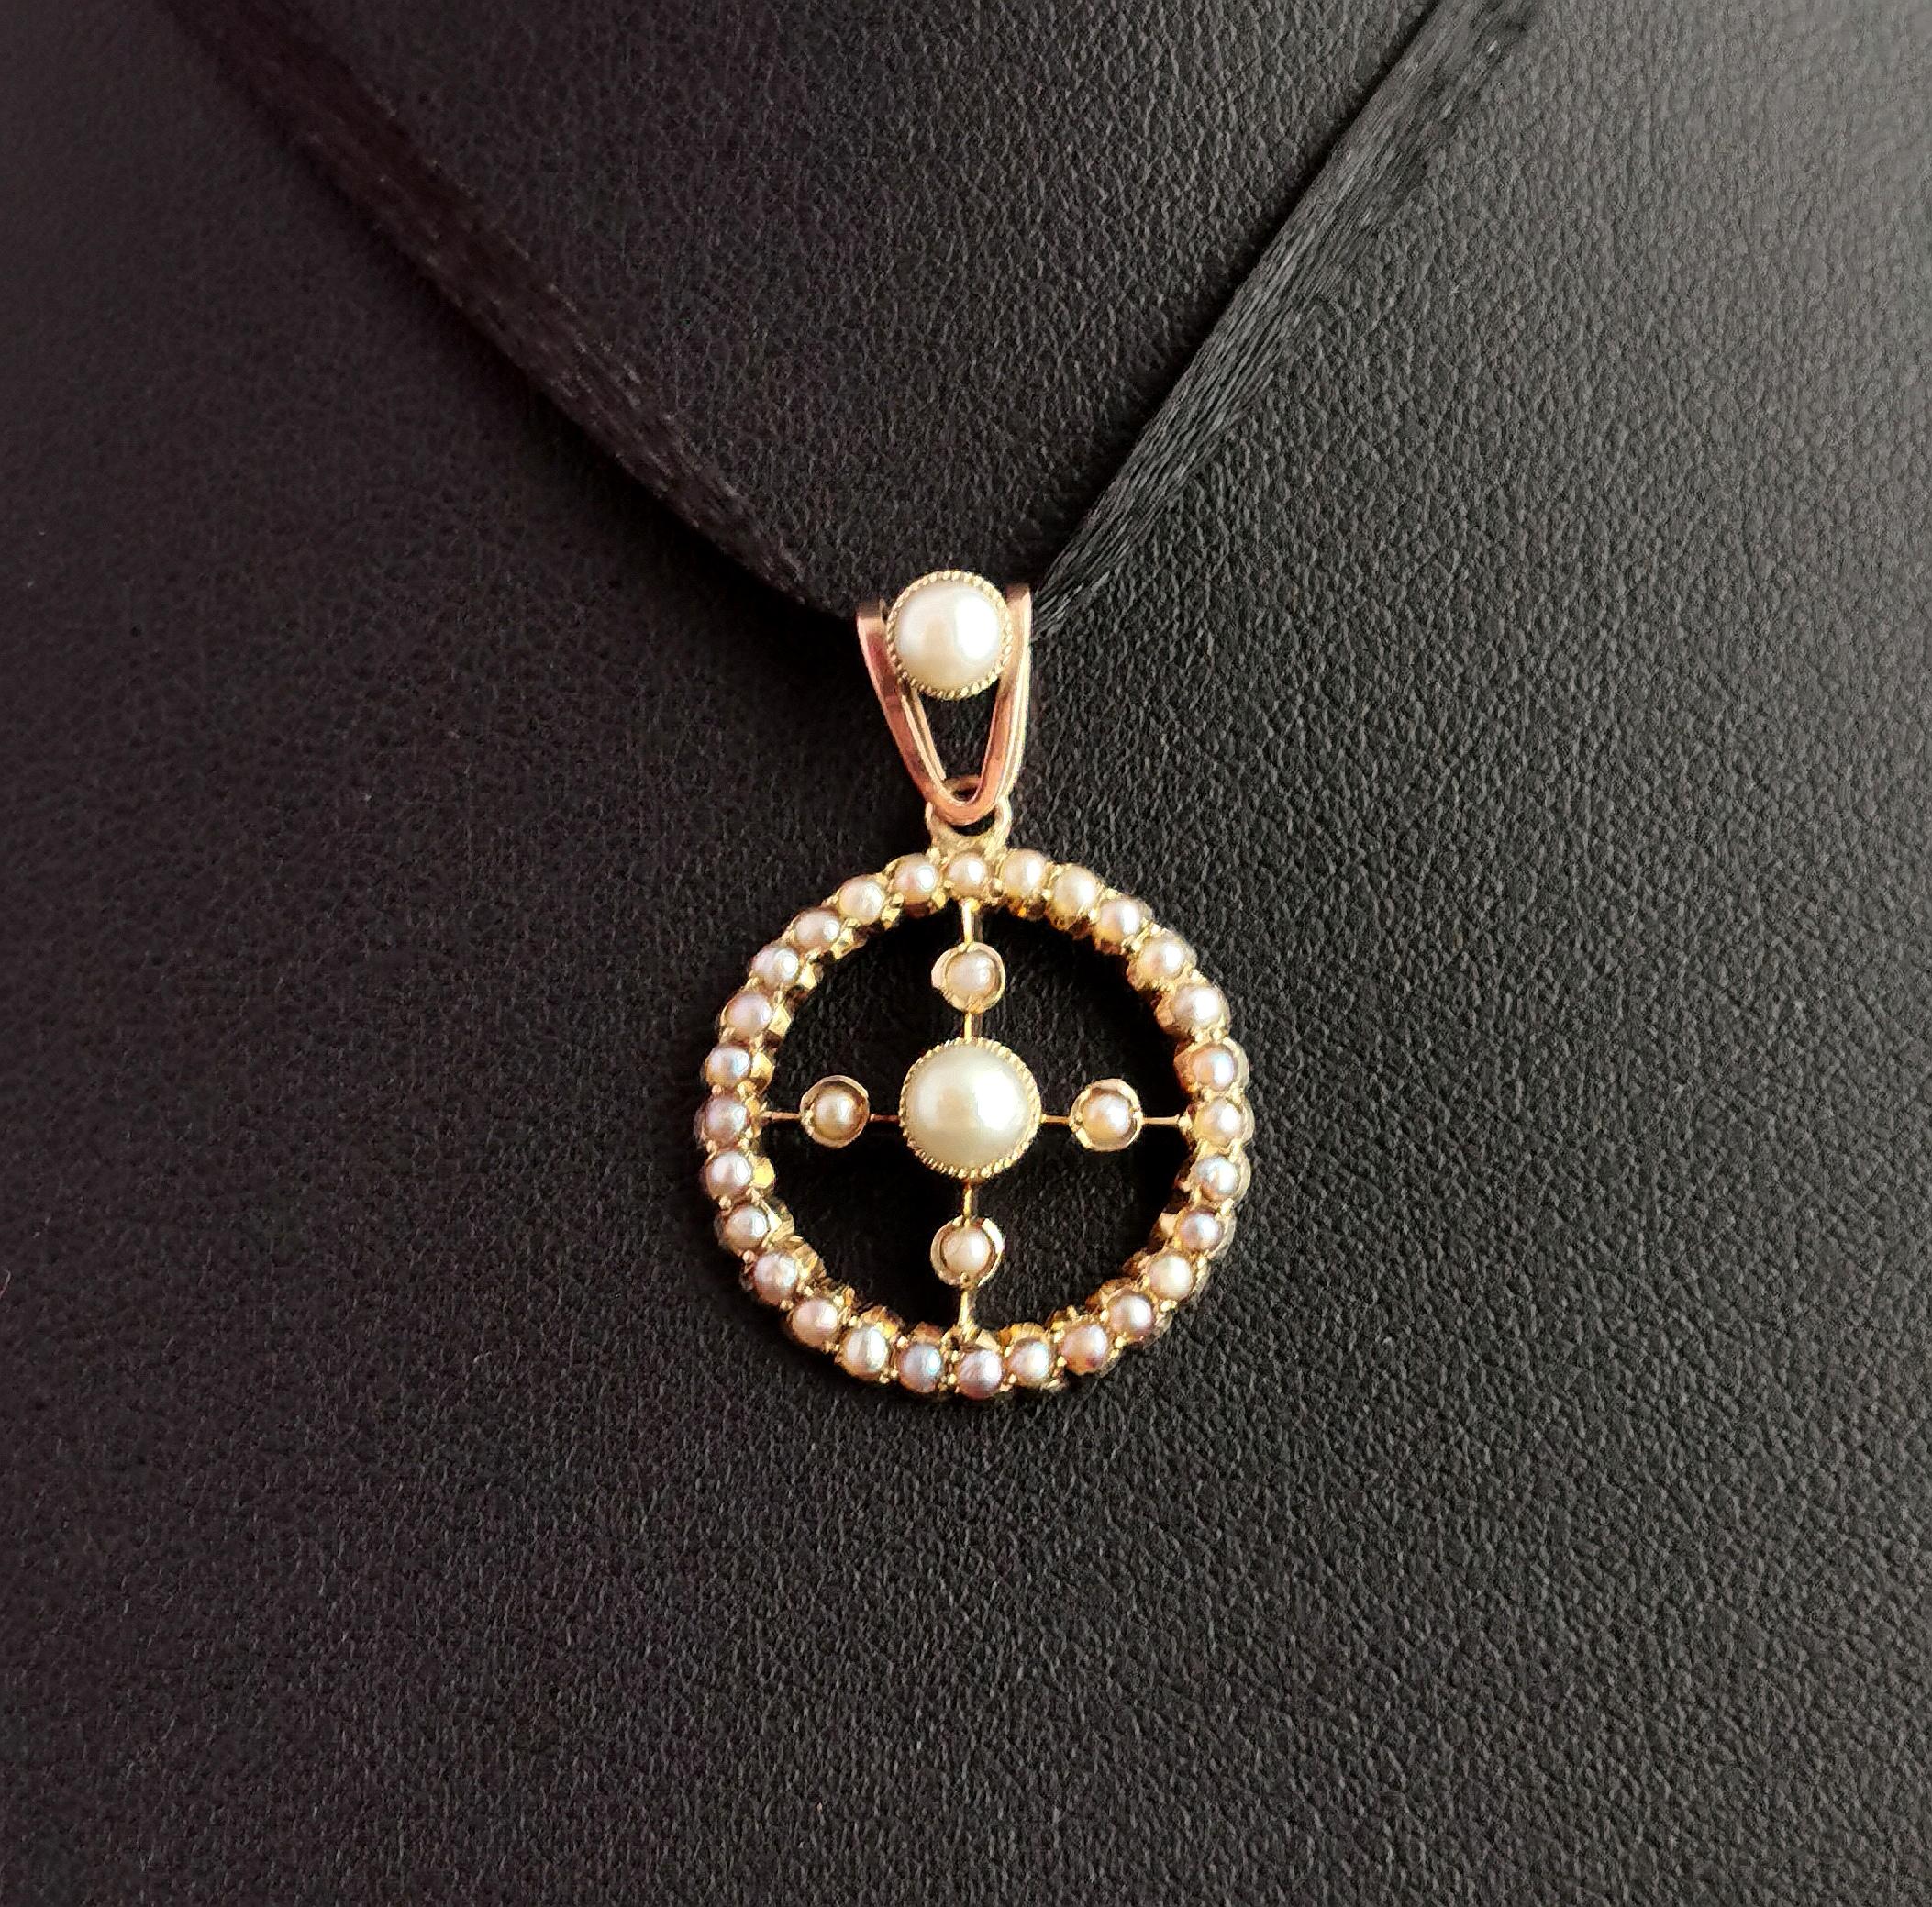 Cabochon Antique Victorian Split Pearl Pendant, 9kt Gold